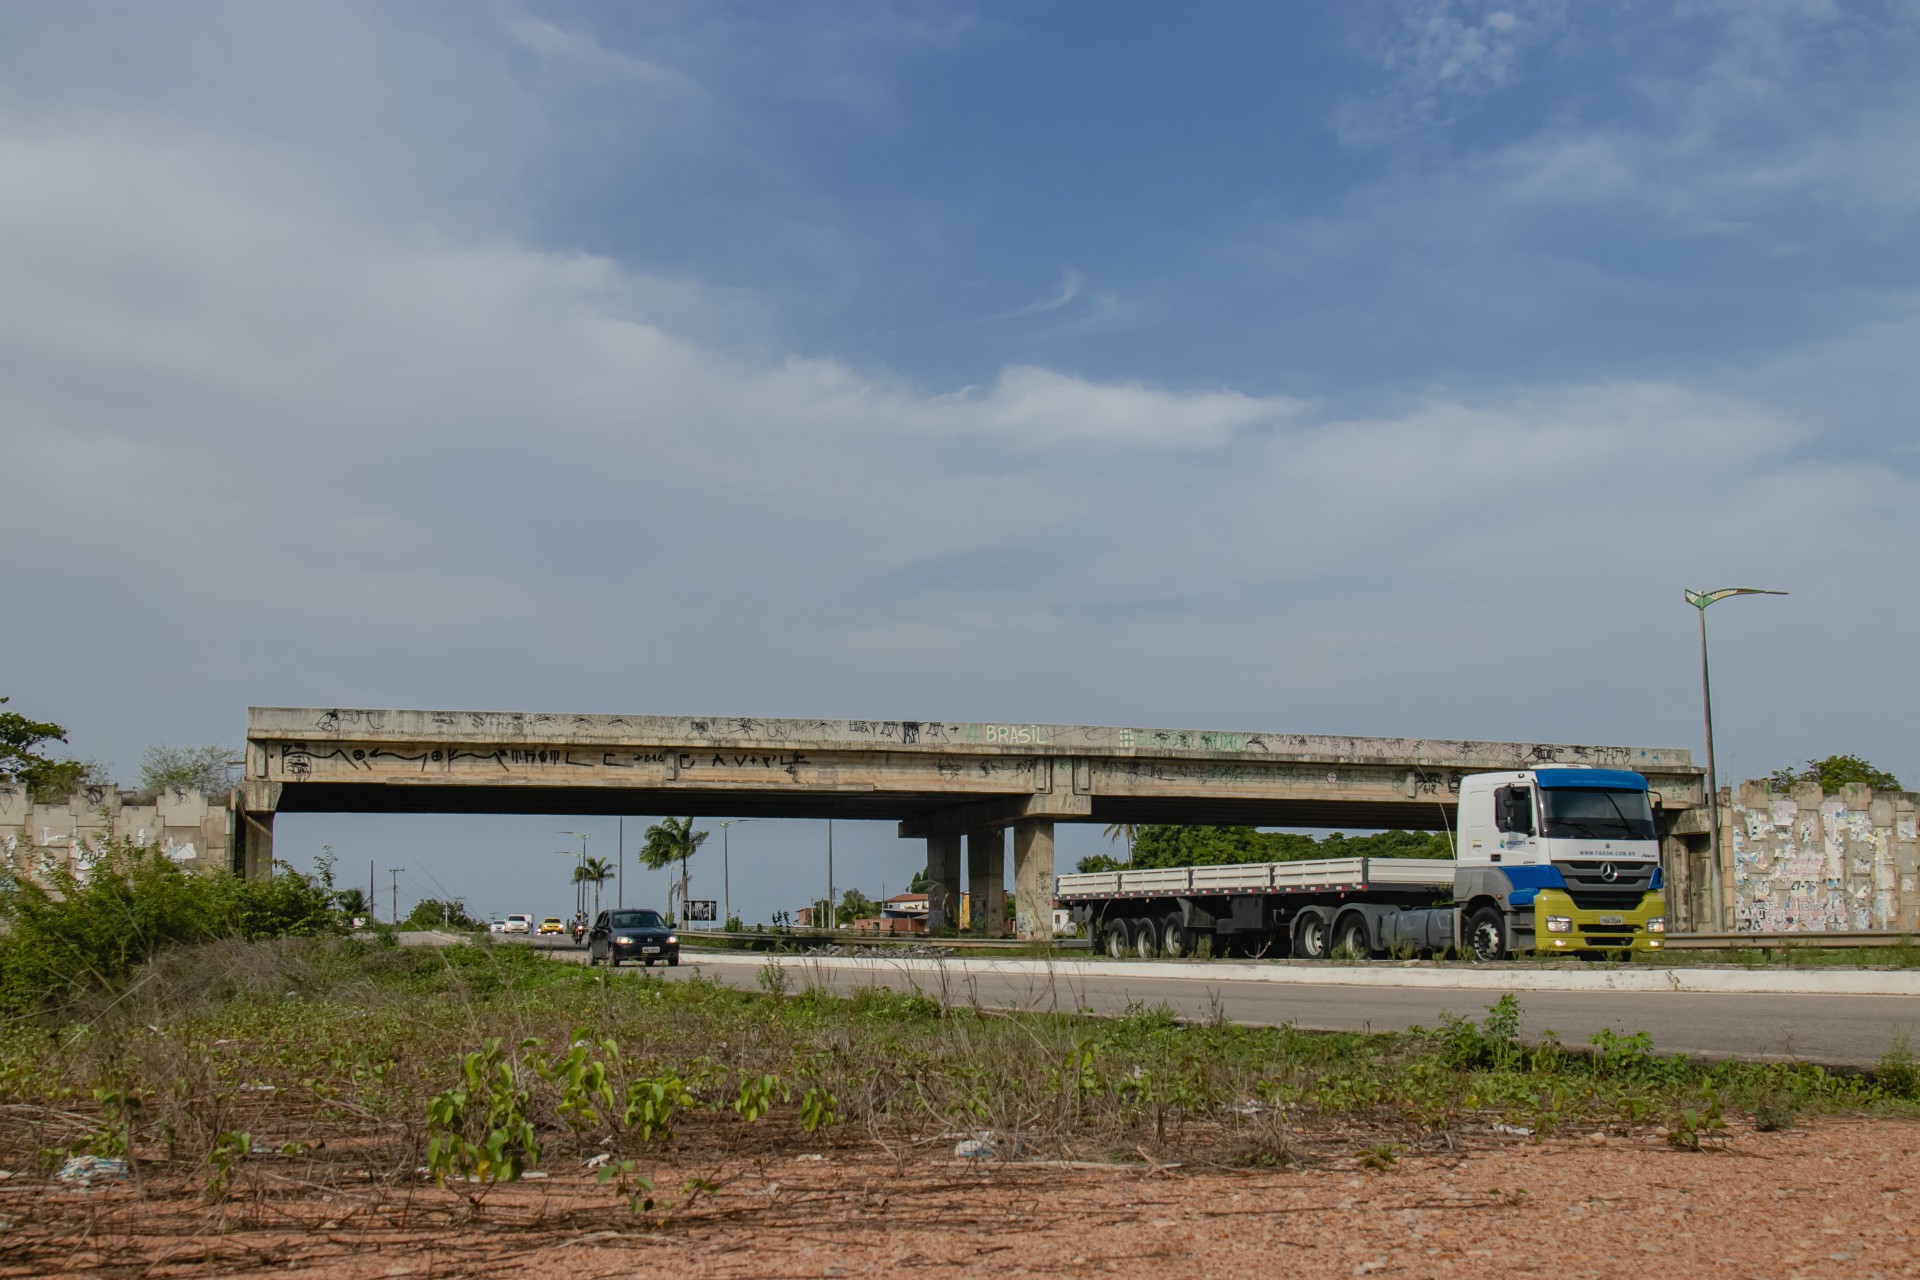 Viaduto de acesso a Horizonte (BR-116) está em situação de abandono, com obras paradas há anos. Trabalhos devem recomeçar em 2021 em esforço do Ministério da Infraestrutura de entregar obras paralisadas. (Foto: Aurelio Alves)